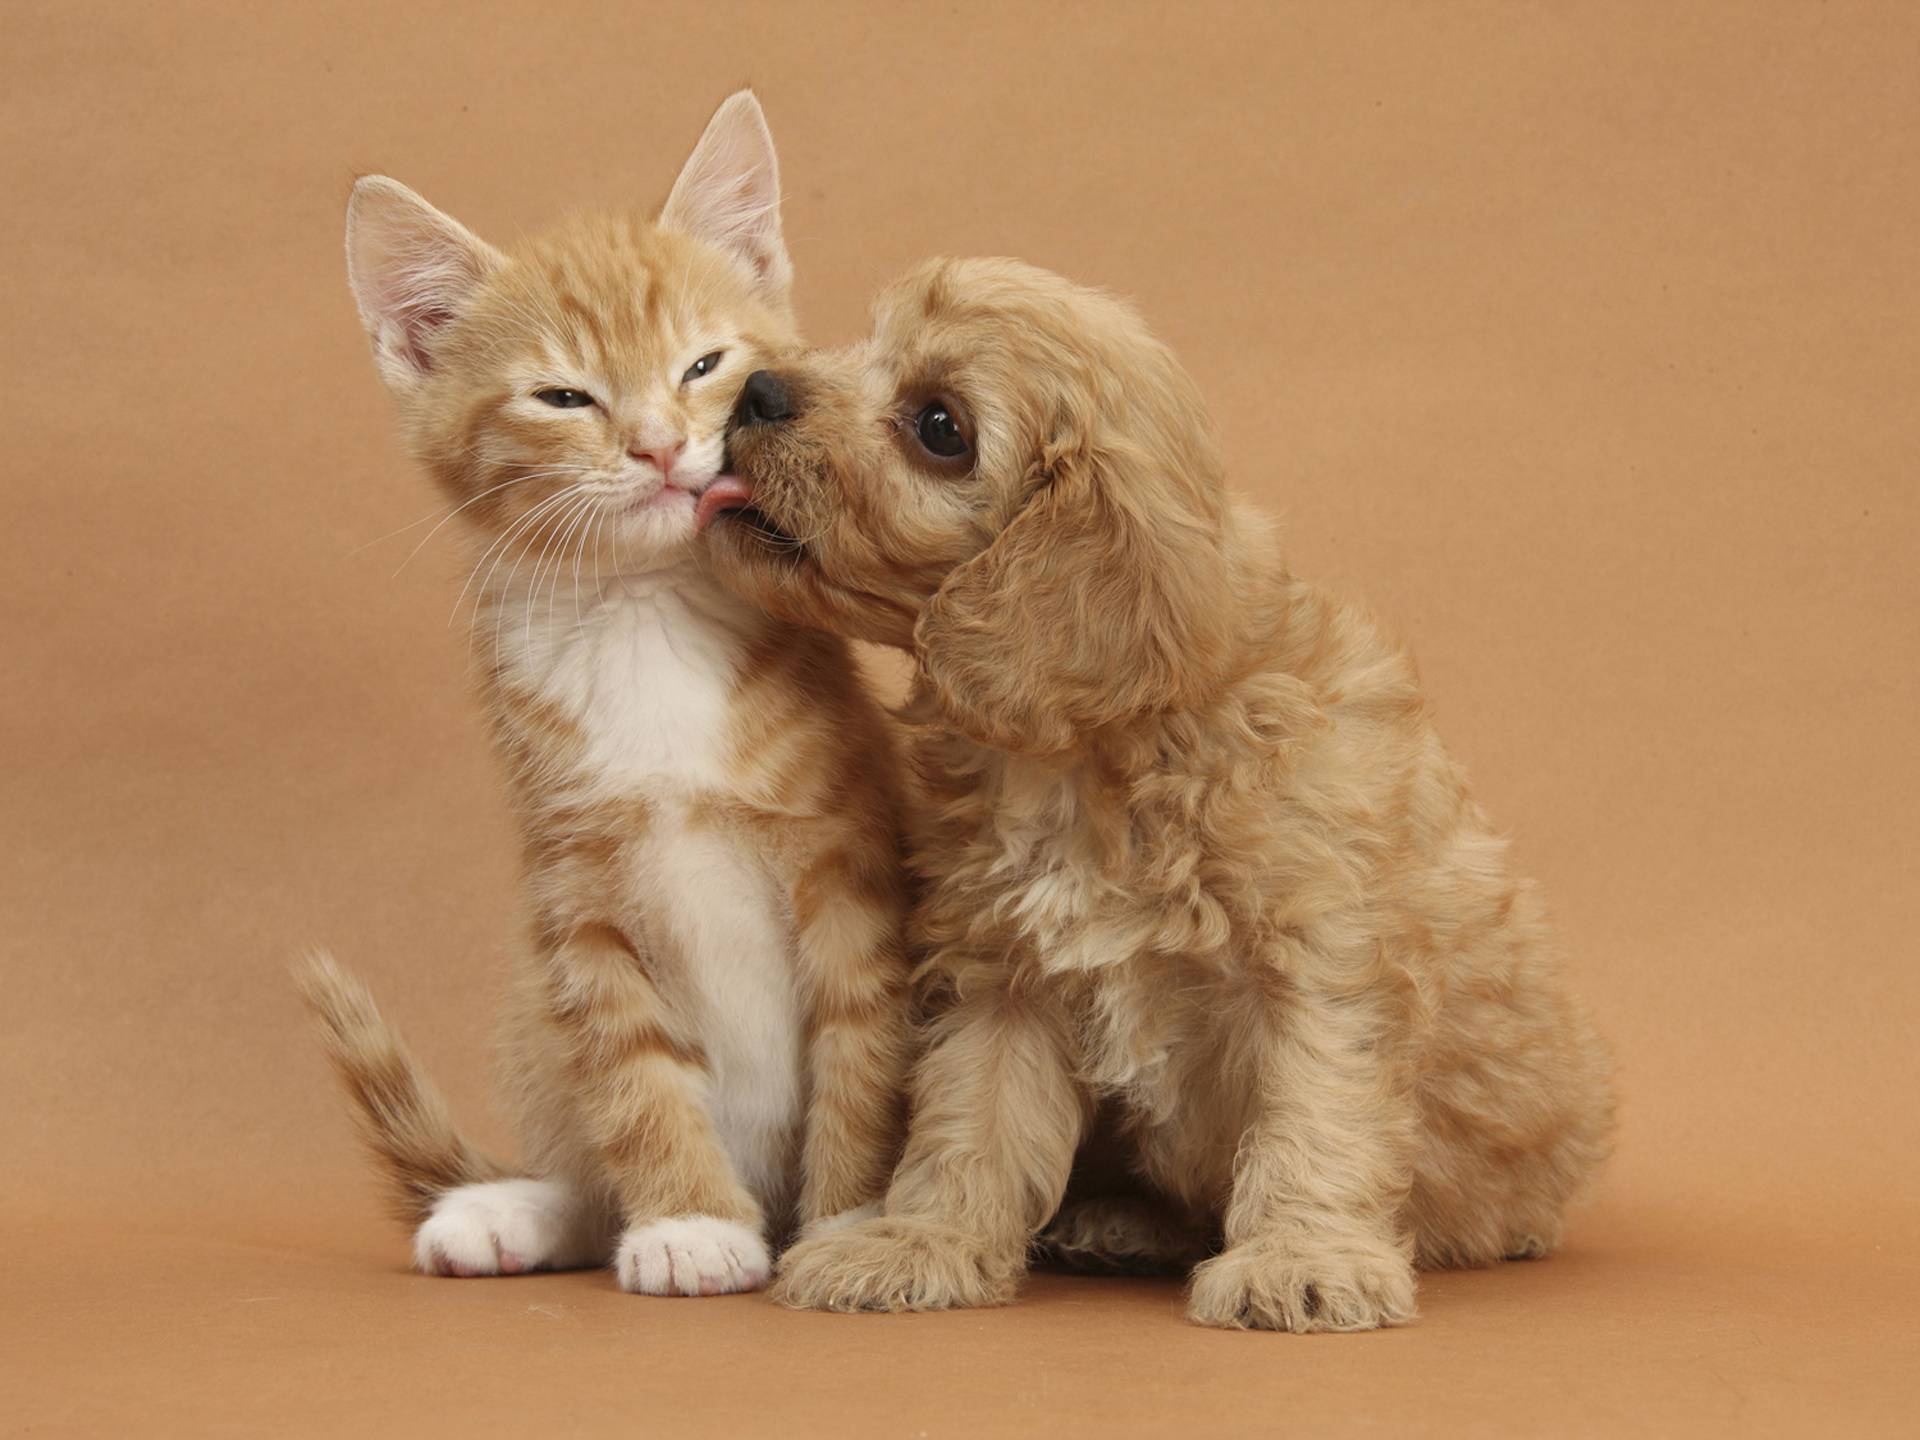 Cute Cats and Dogs Wallpapers - Top Những Hình Ảnh Đẹp